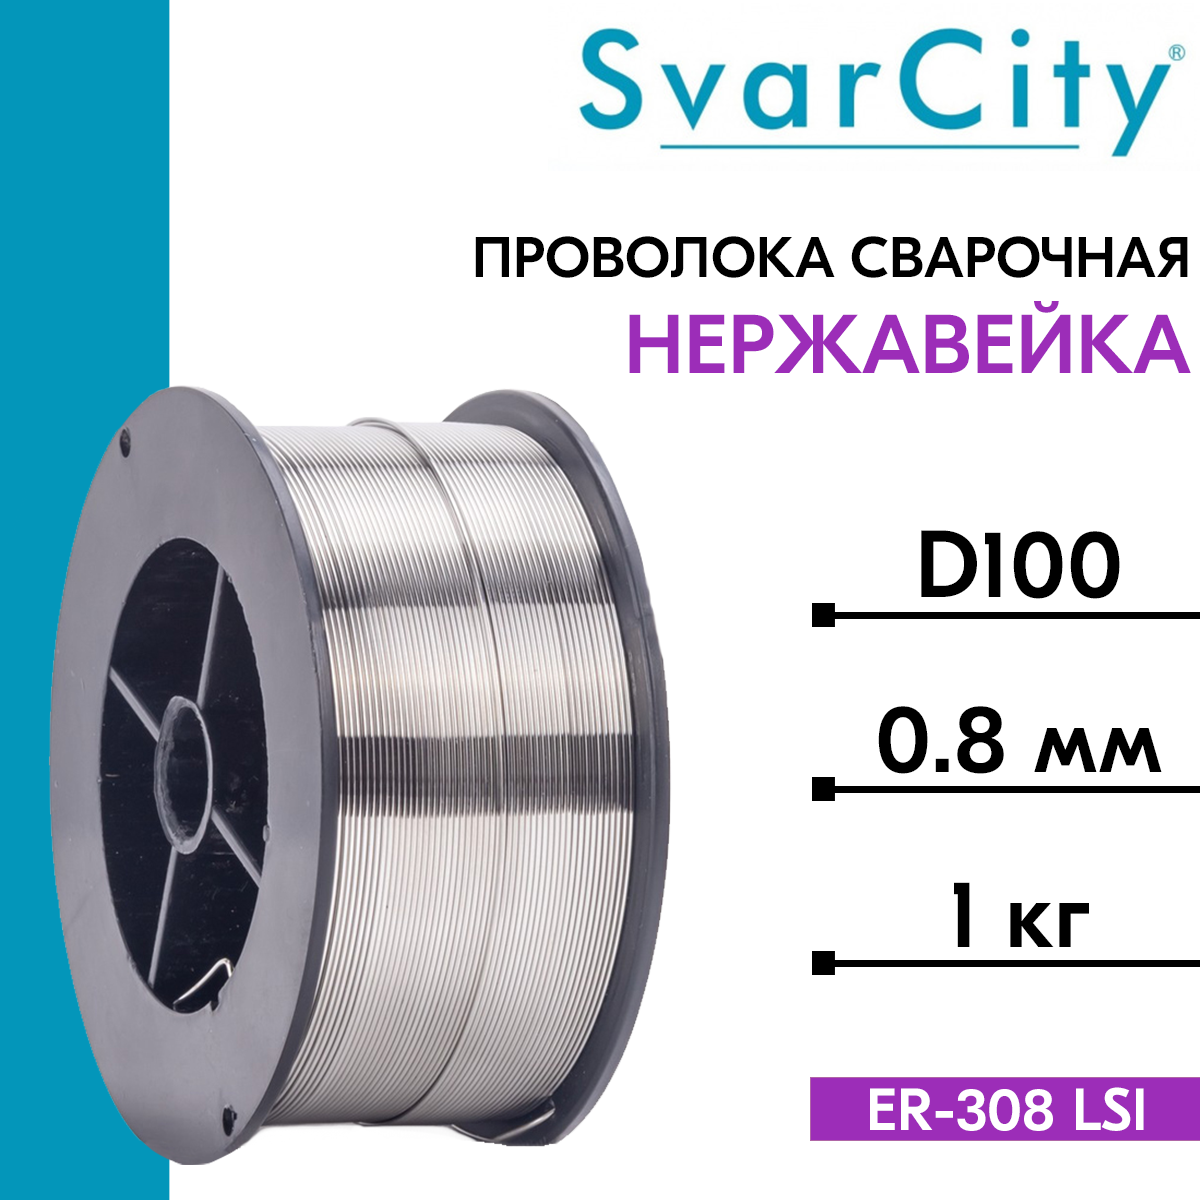 Проволока сварочная нержавеющая ER308LSI д. 0.8 мм 1 кг (SvarCity) / AWS A5.9